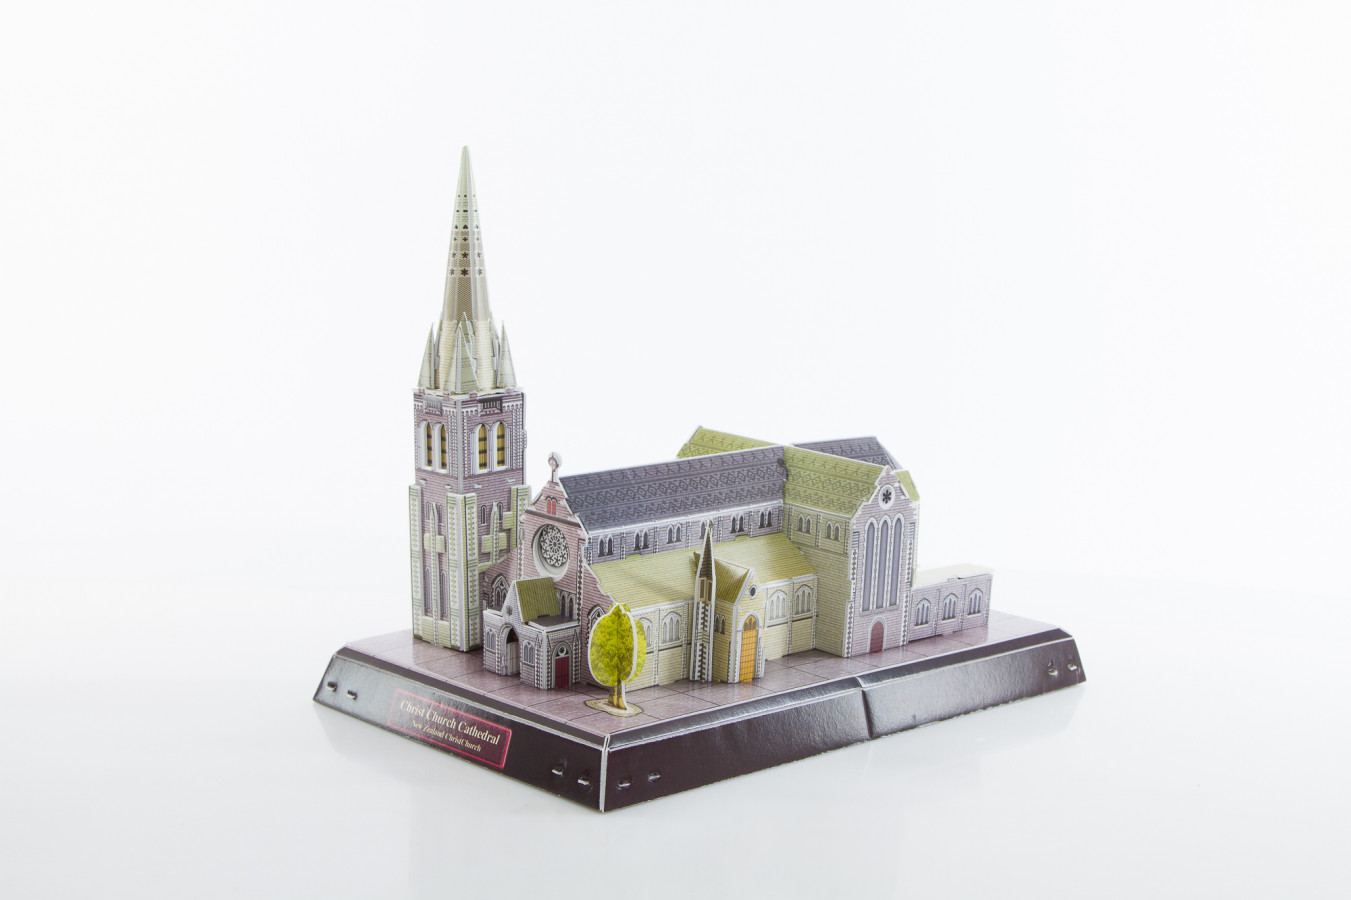 ImagenRompecabezas 3D en Caja: Christchurch Cathedral